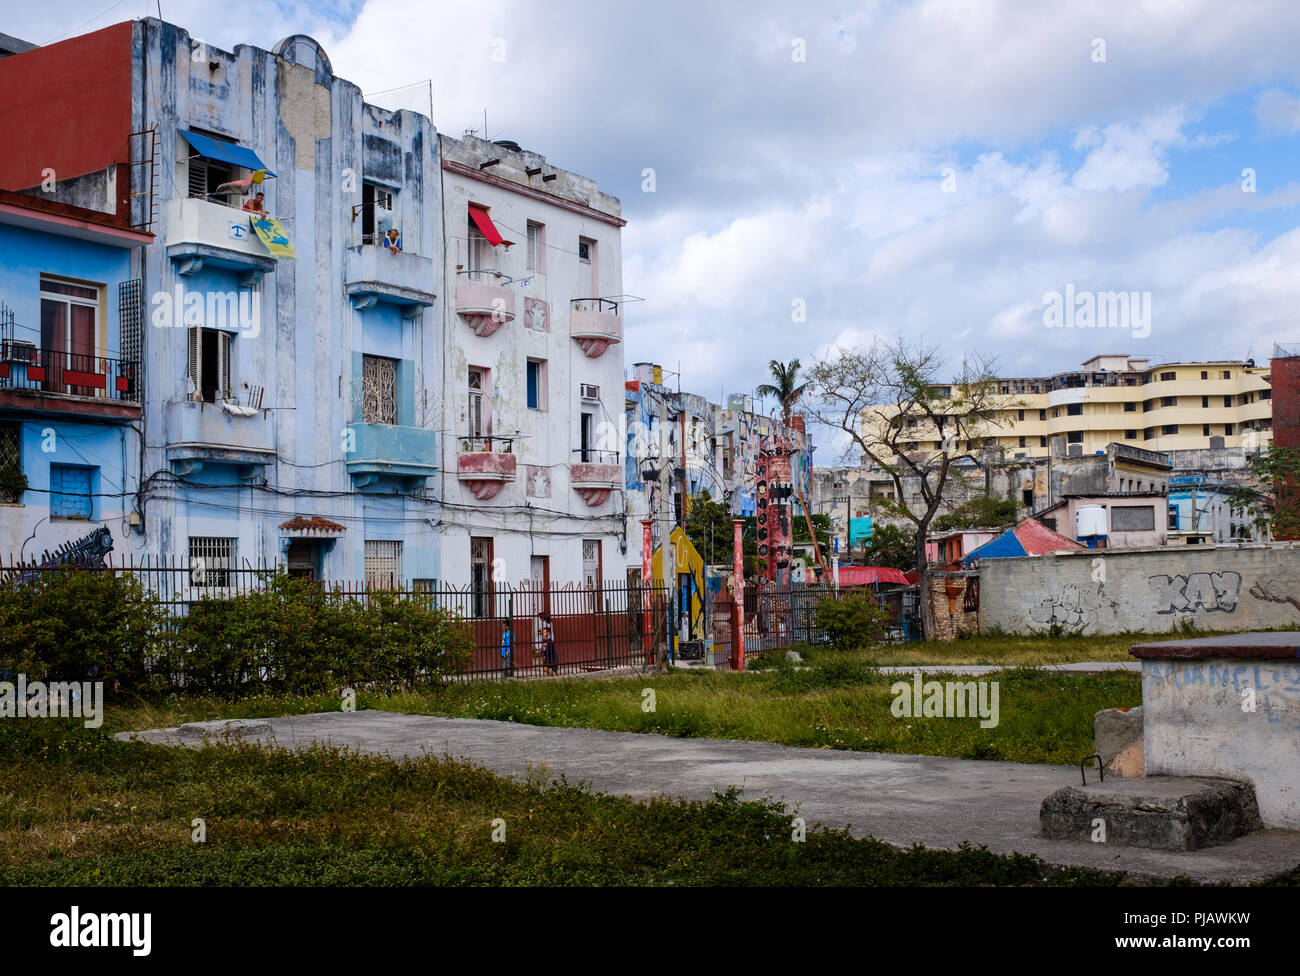 La HAVANE, CUBA - CIRCA MARS 2017 : bâtiments autour de la célèbre Callejón de Hamel dans la région de Centro Habana. Une attraction touristique populaire de La Havane. Banque D'Images